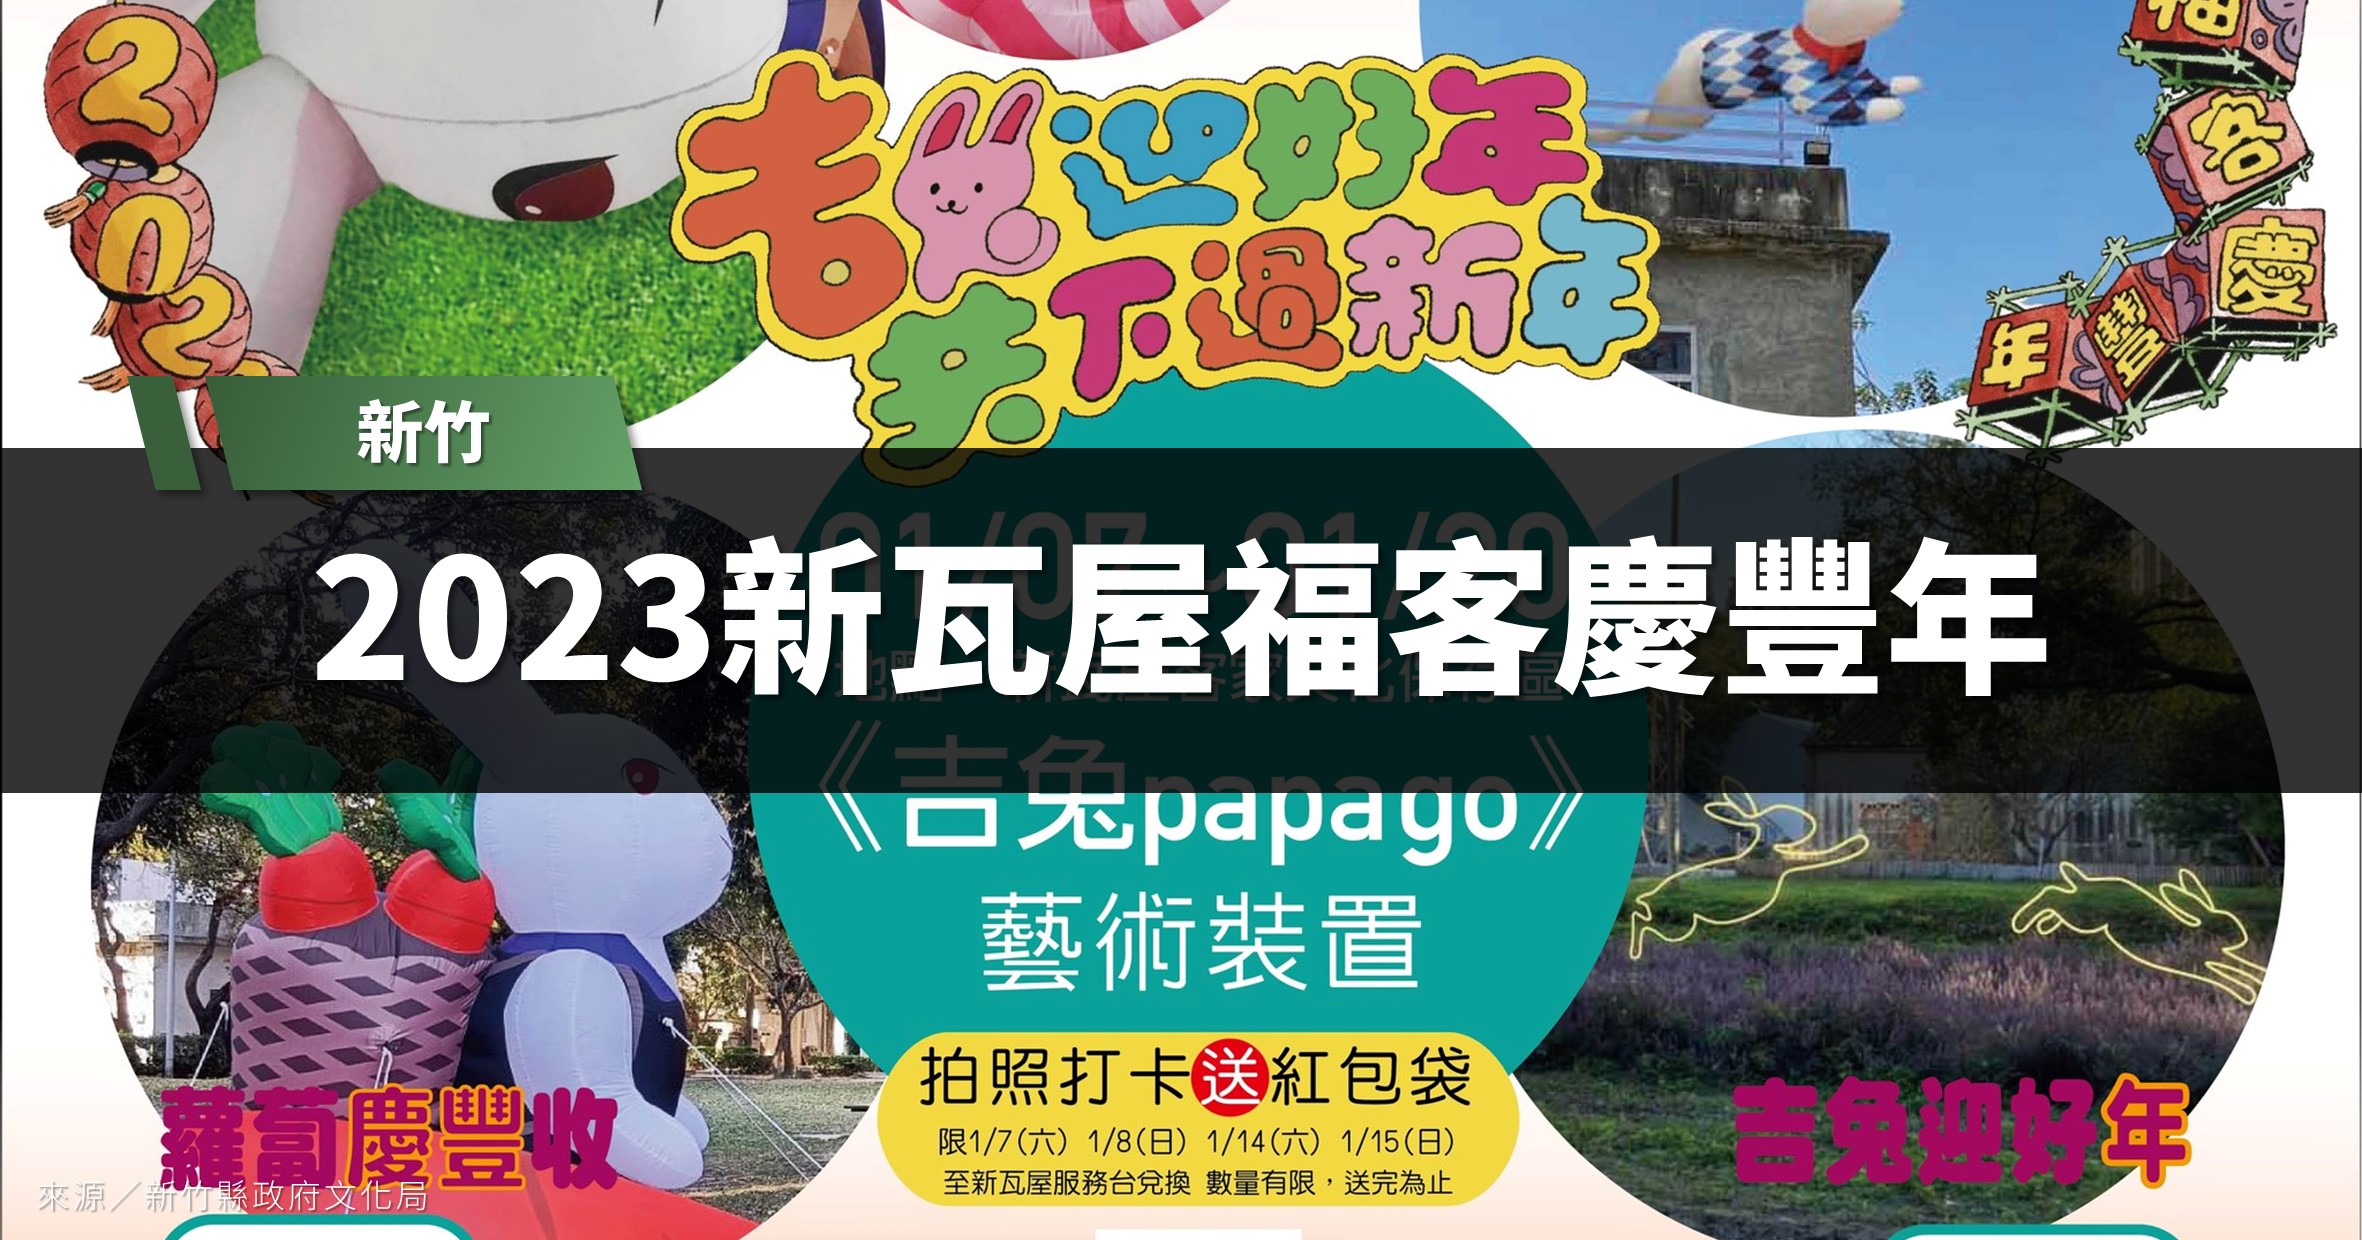 新竹活動》2023新瓦屋福客慶豐年「吉兔PAPA GO藝術裝置」